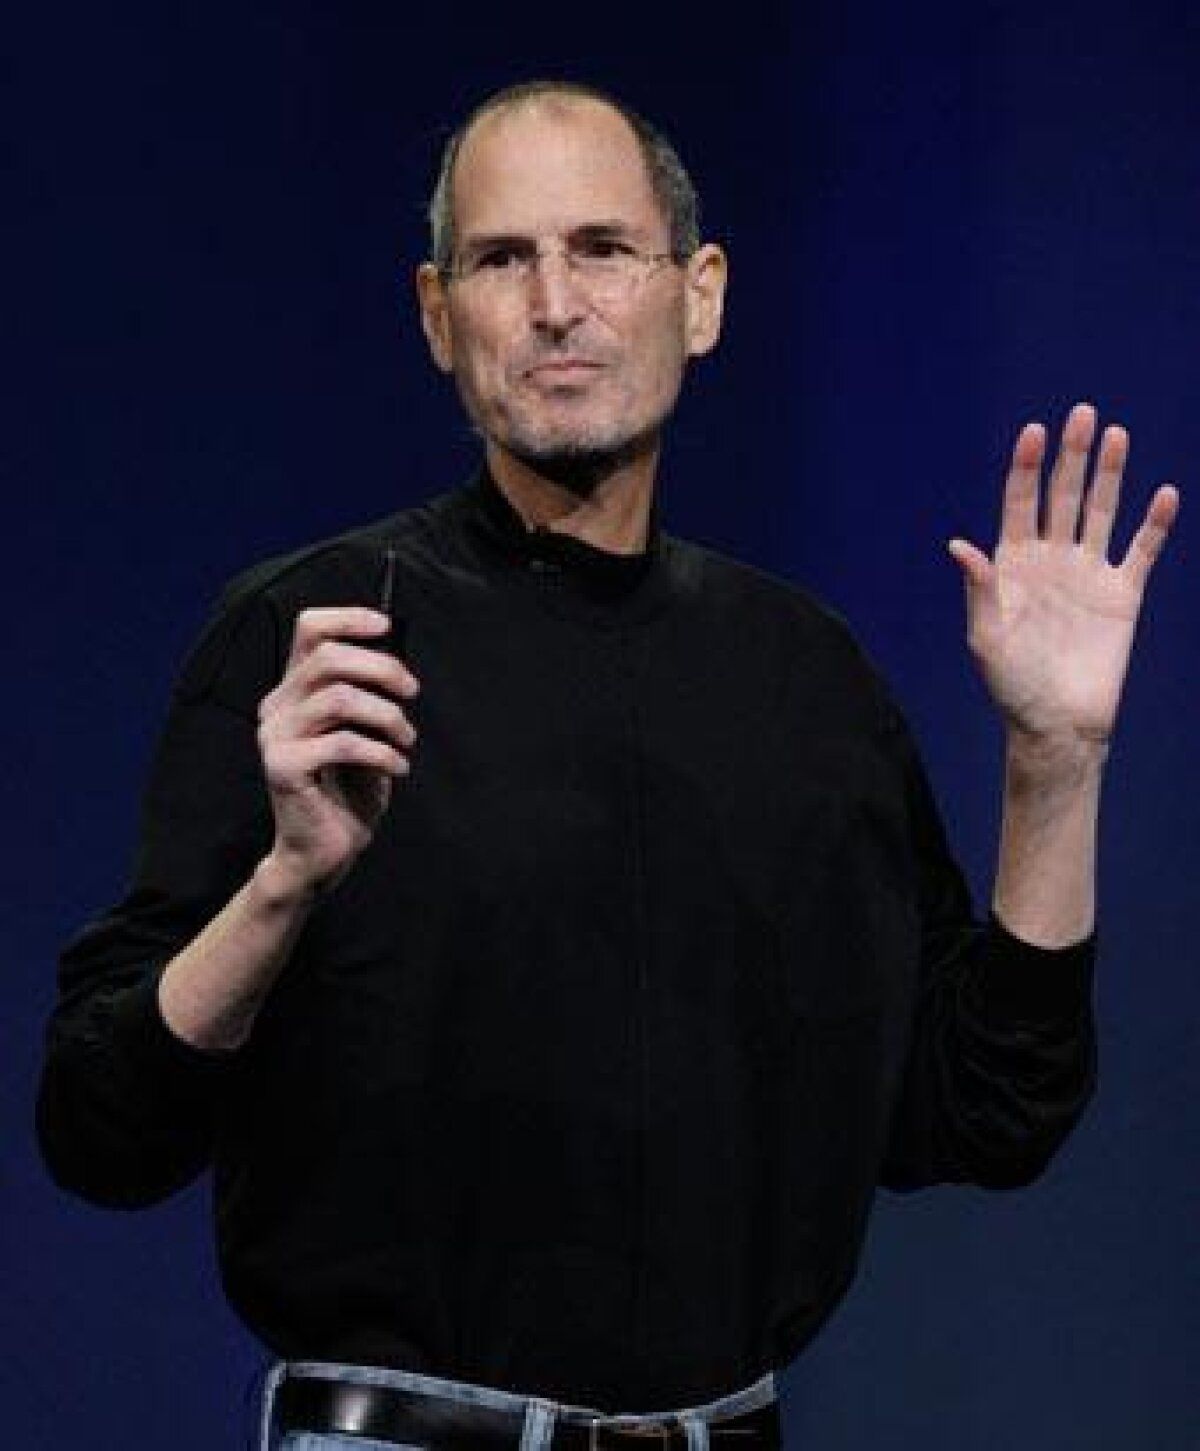 Apple anunţă că Steve Jobs a murit! Bill Gates şi-a luat adio de la "colegul, competitorul şi prietenul" său de o viaţă